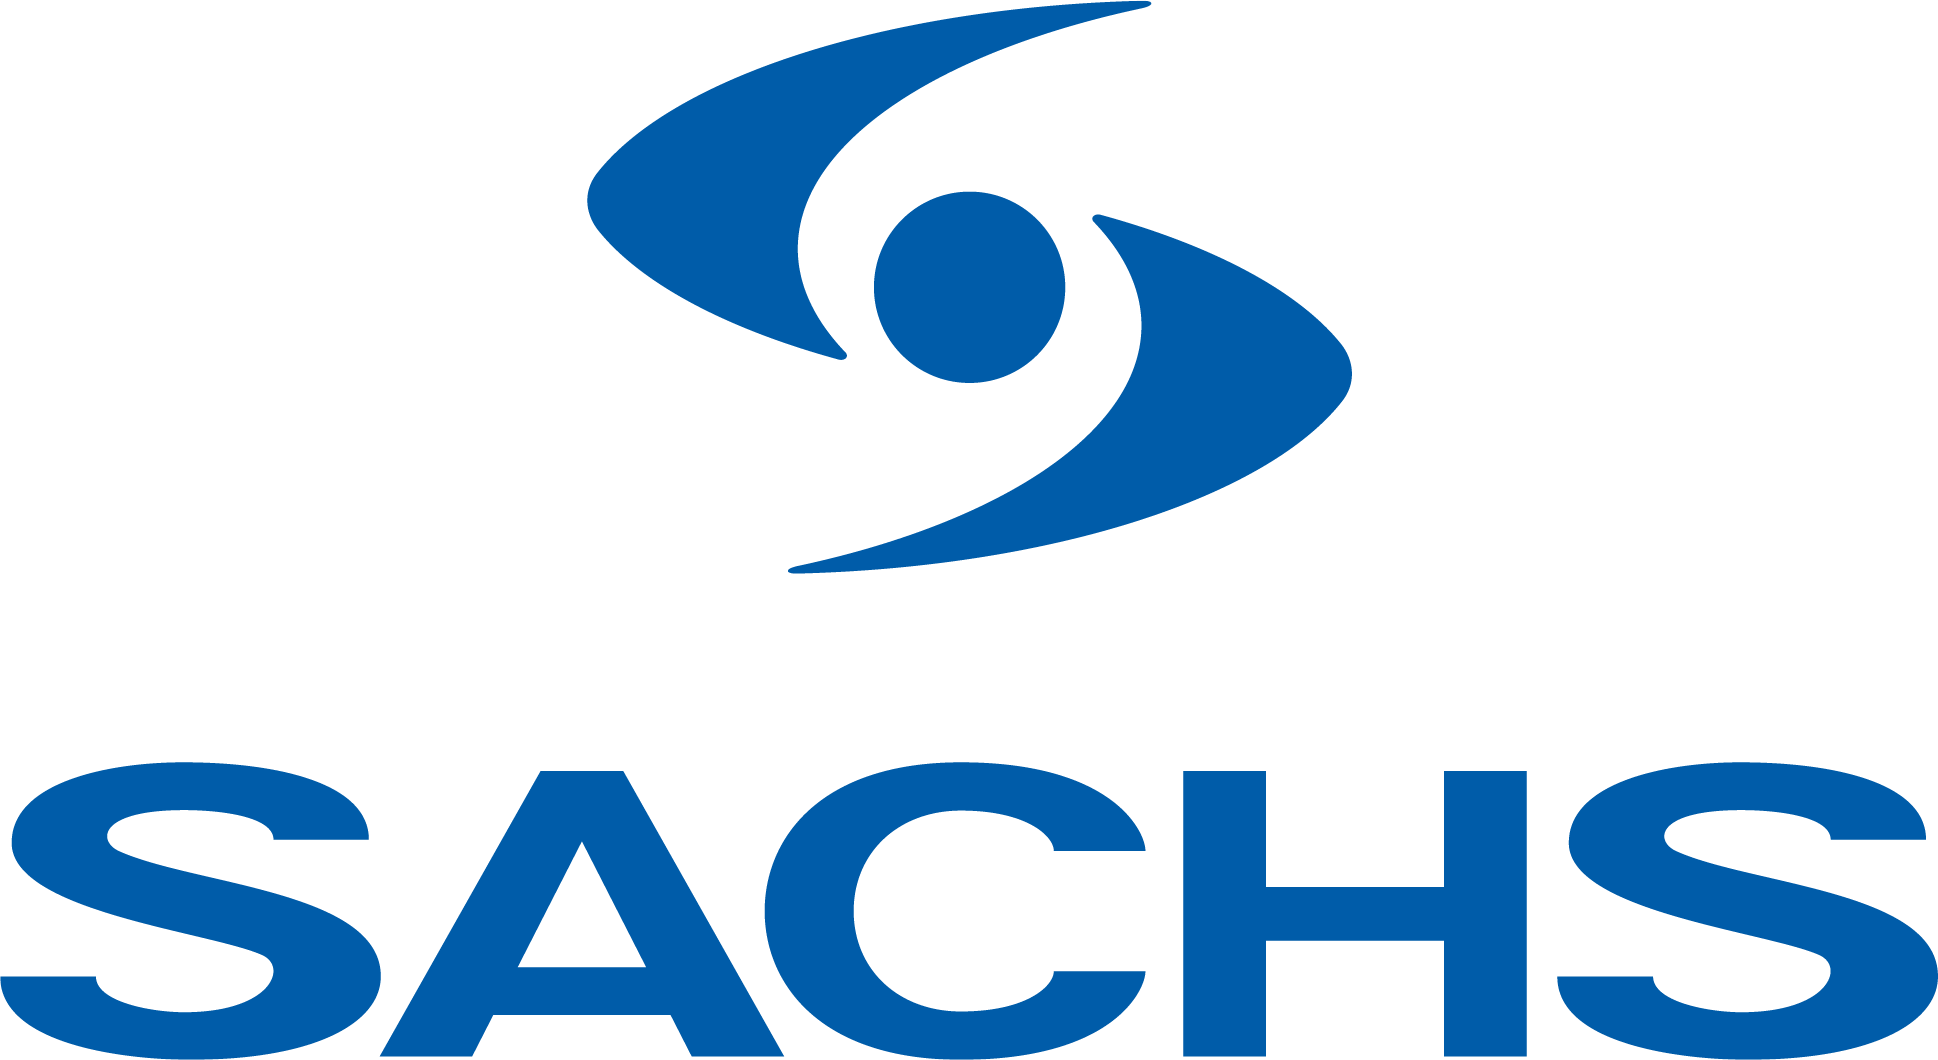 Logo Sachs - Fornitore IFG - il freno - Ricambi Veicoli Industriali, autocarri e bus